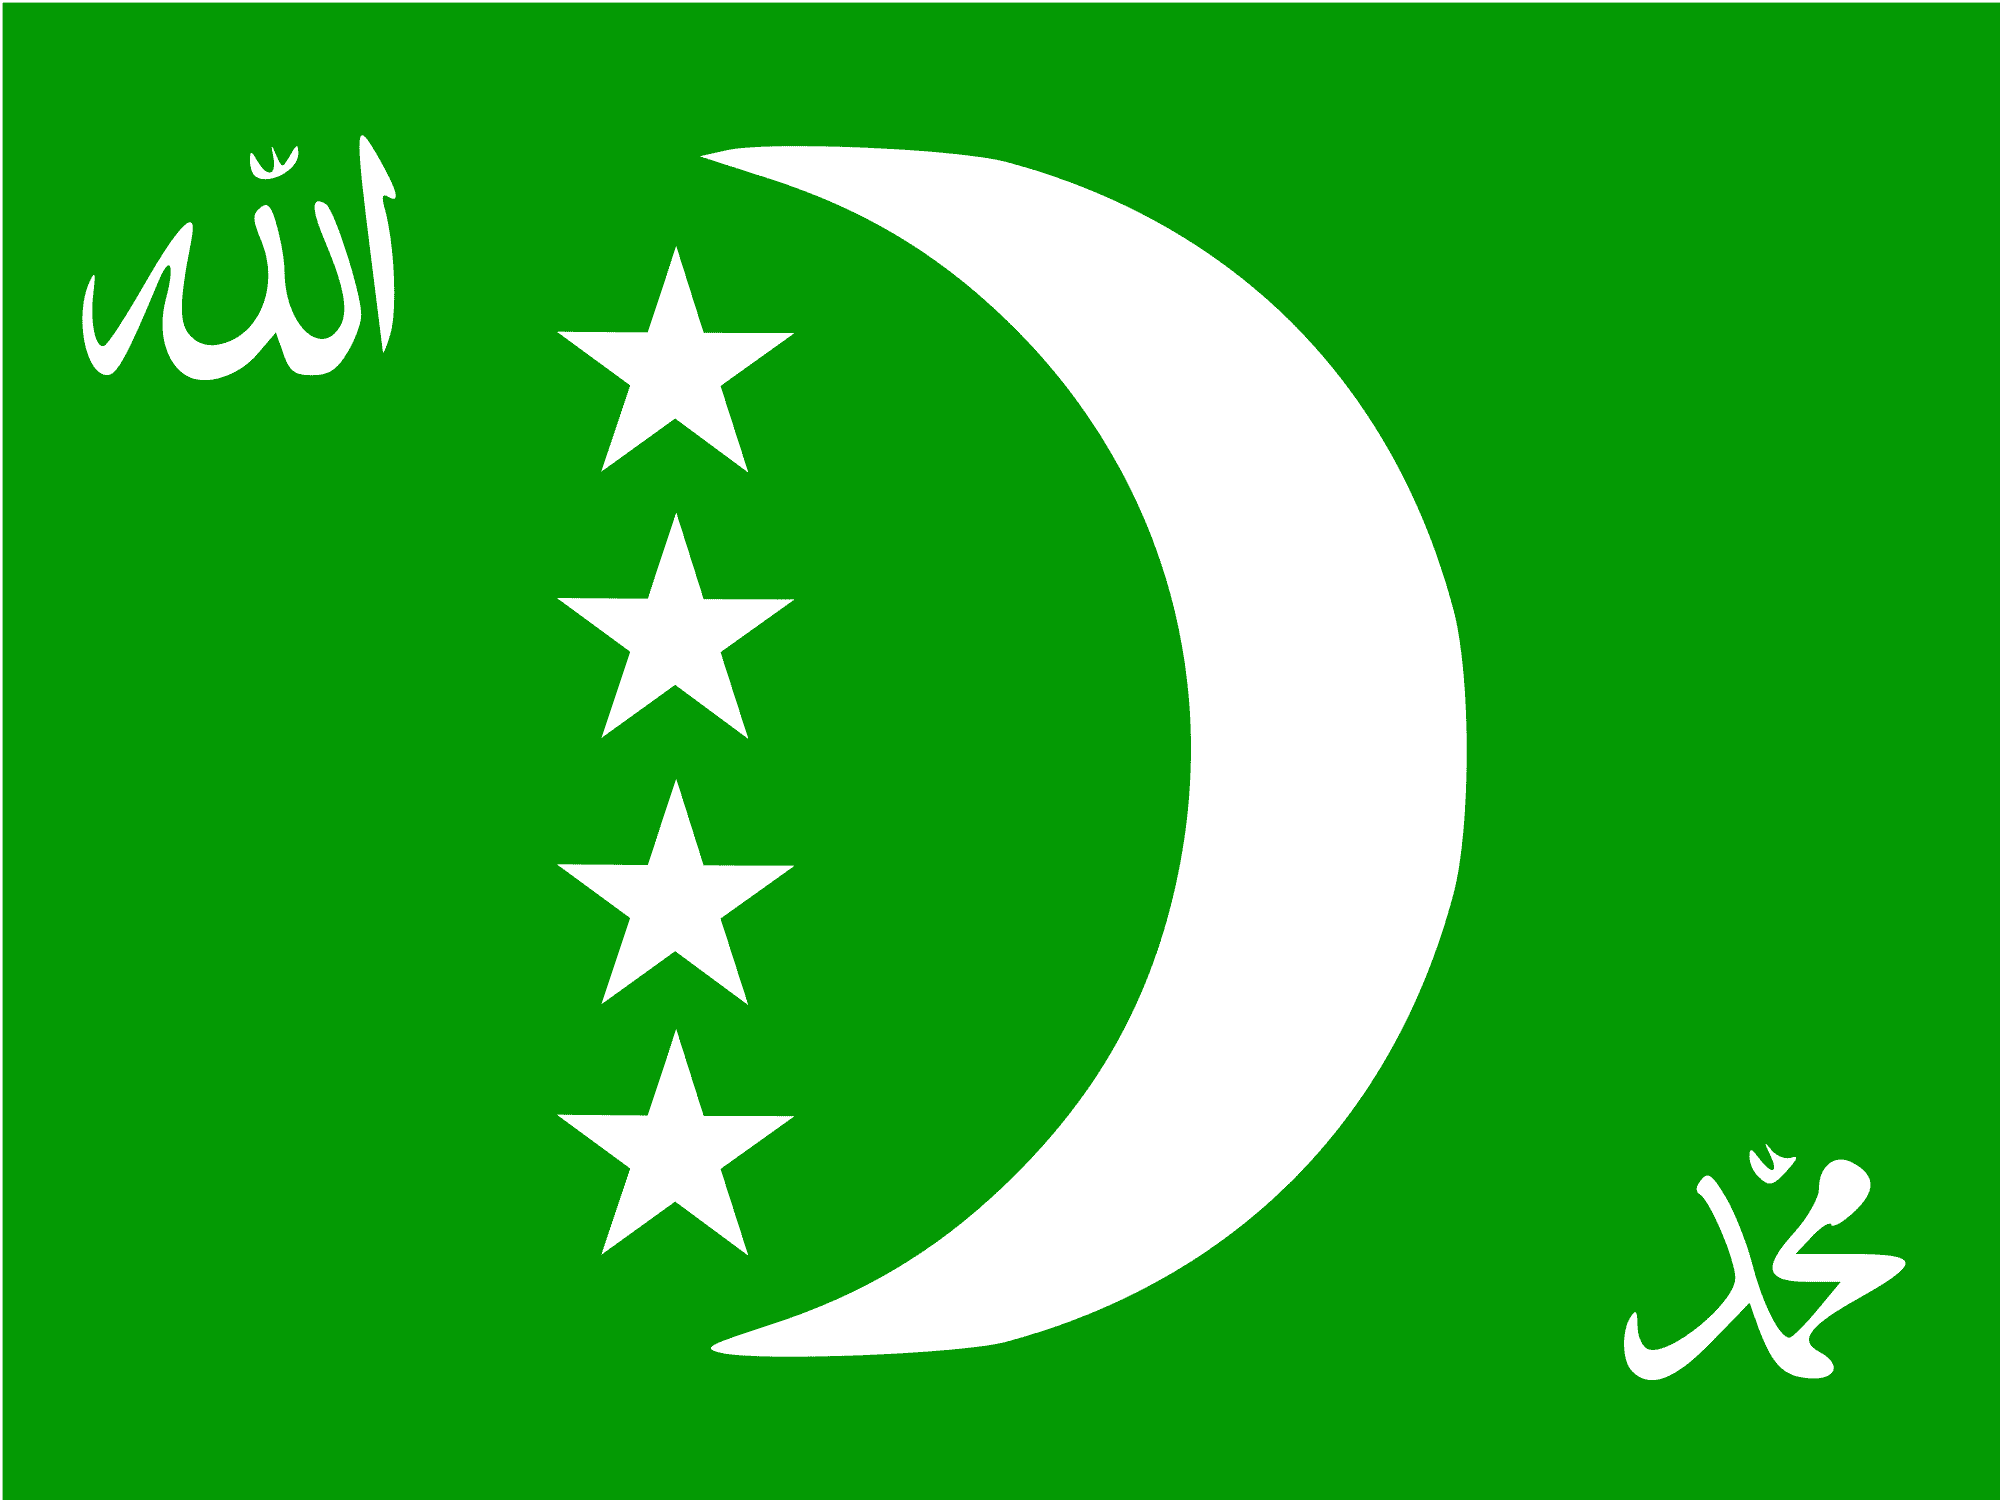 Зелено белый флаг с месяцем. Мусульманский флаг. Флаг с полумесяцем и звездой. Зеленый флаг Турции. Флаг исламской Республики.